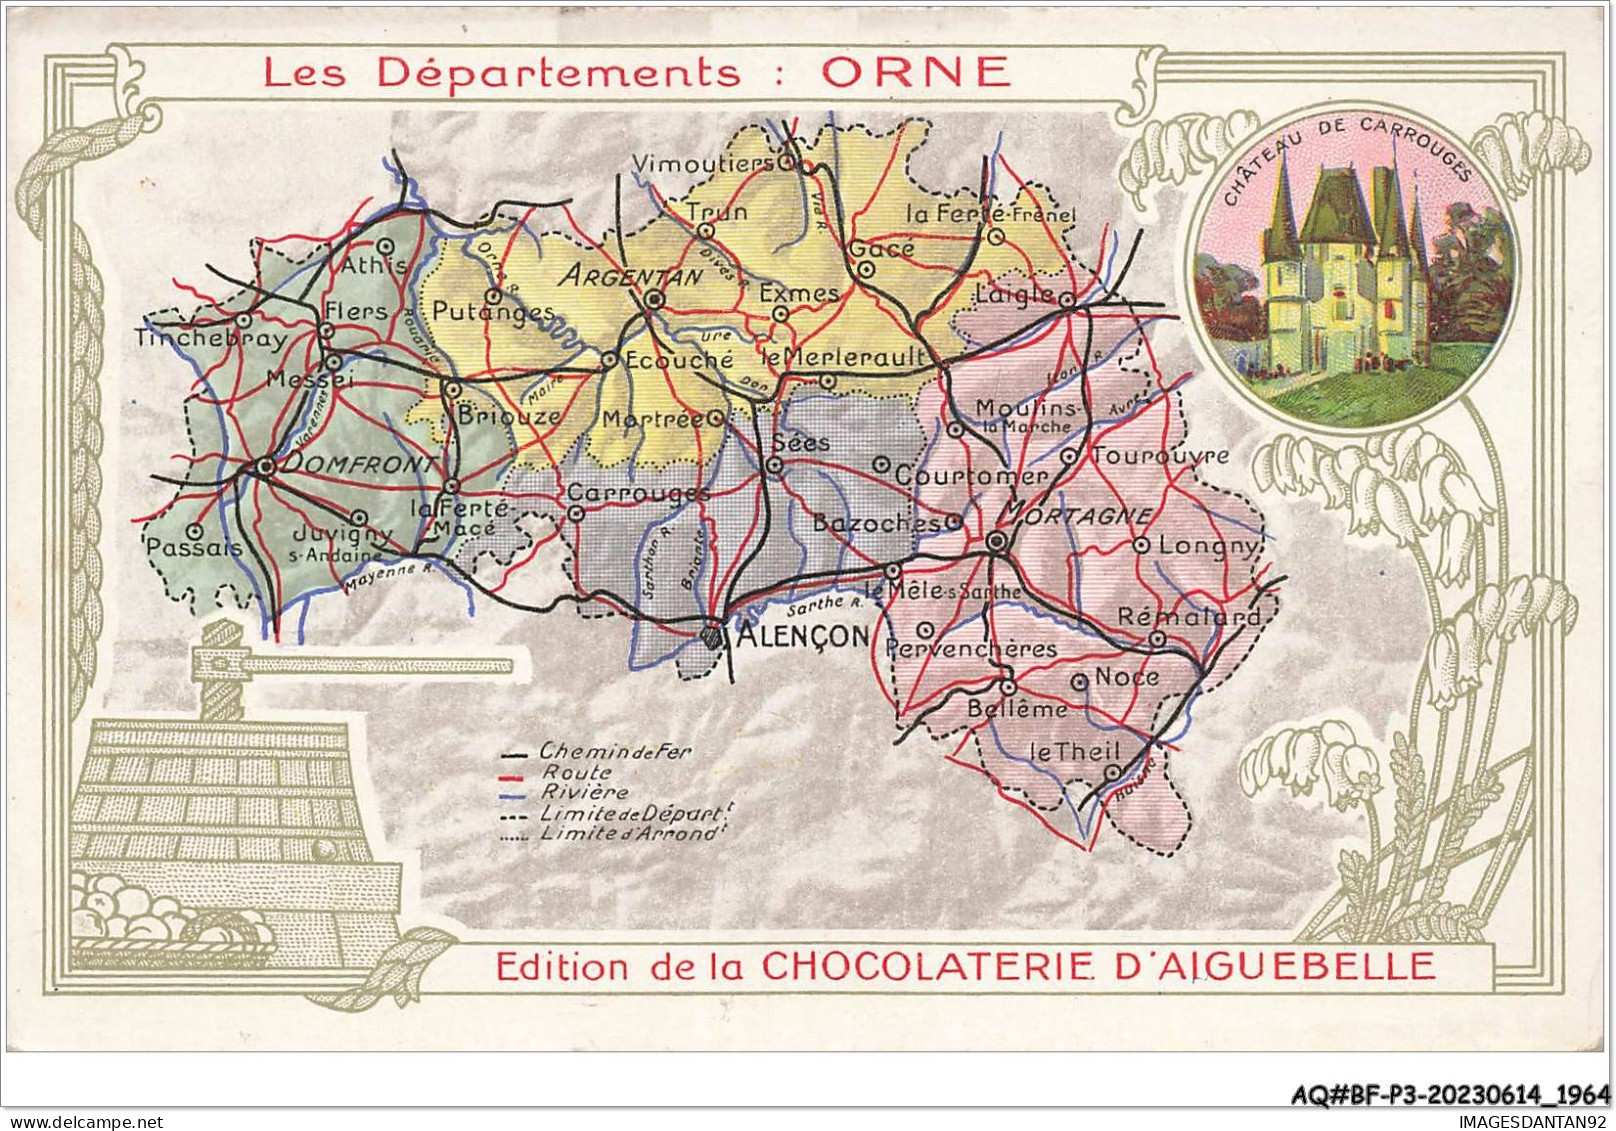 AQ#BFP3-CHROMOS-0980  - CHOCOLAT D'AIGUEBELLE - Les Départements - Orne - Aiguebelle